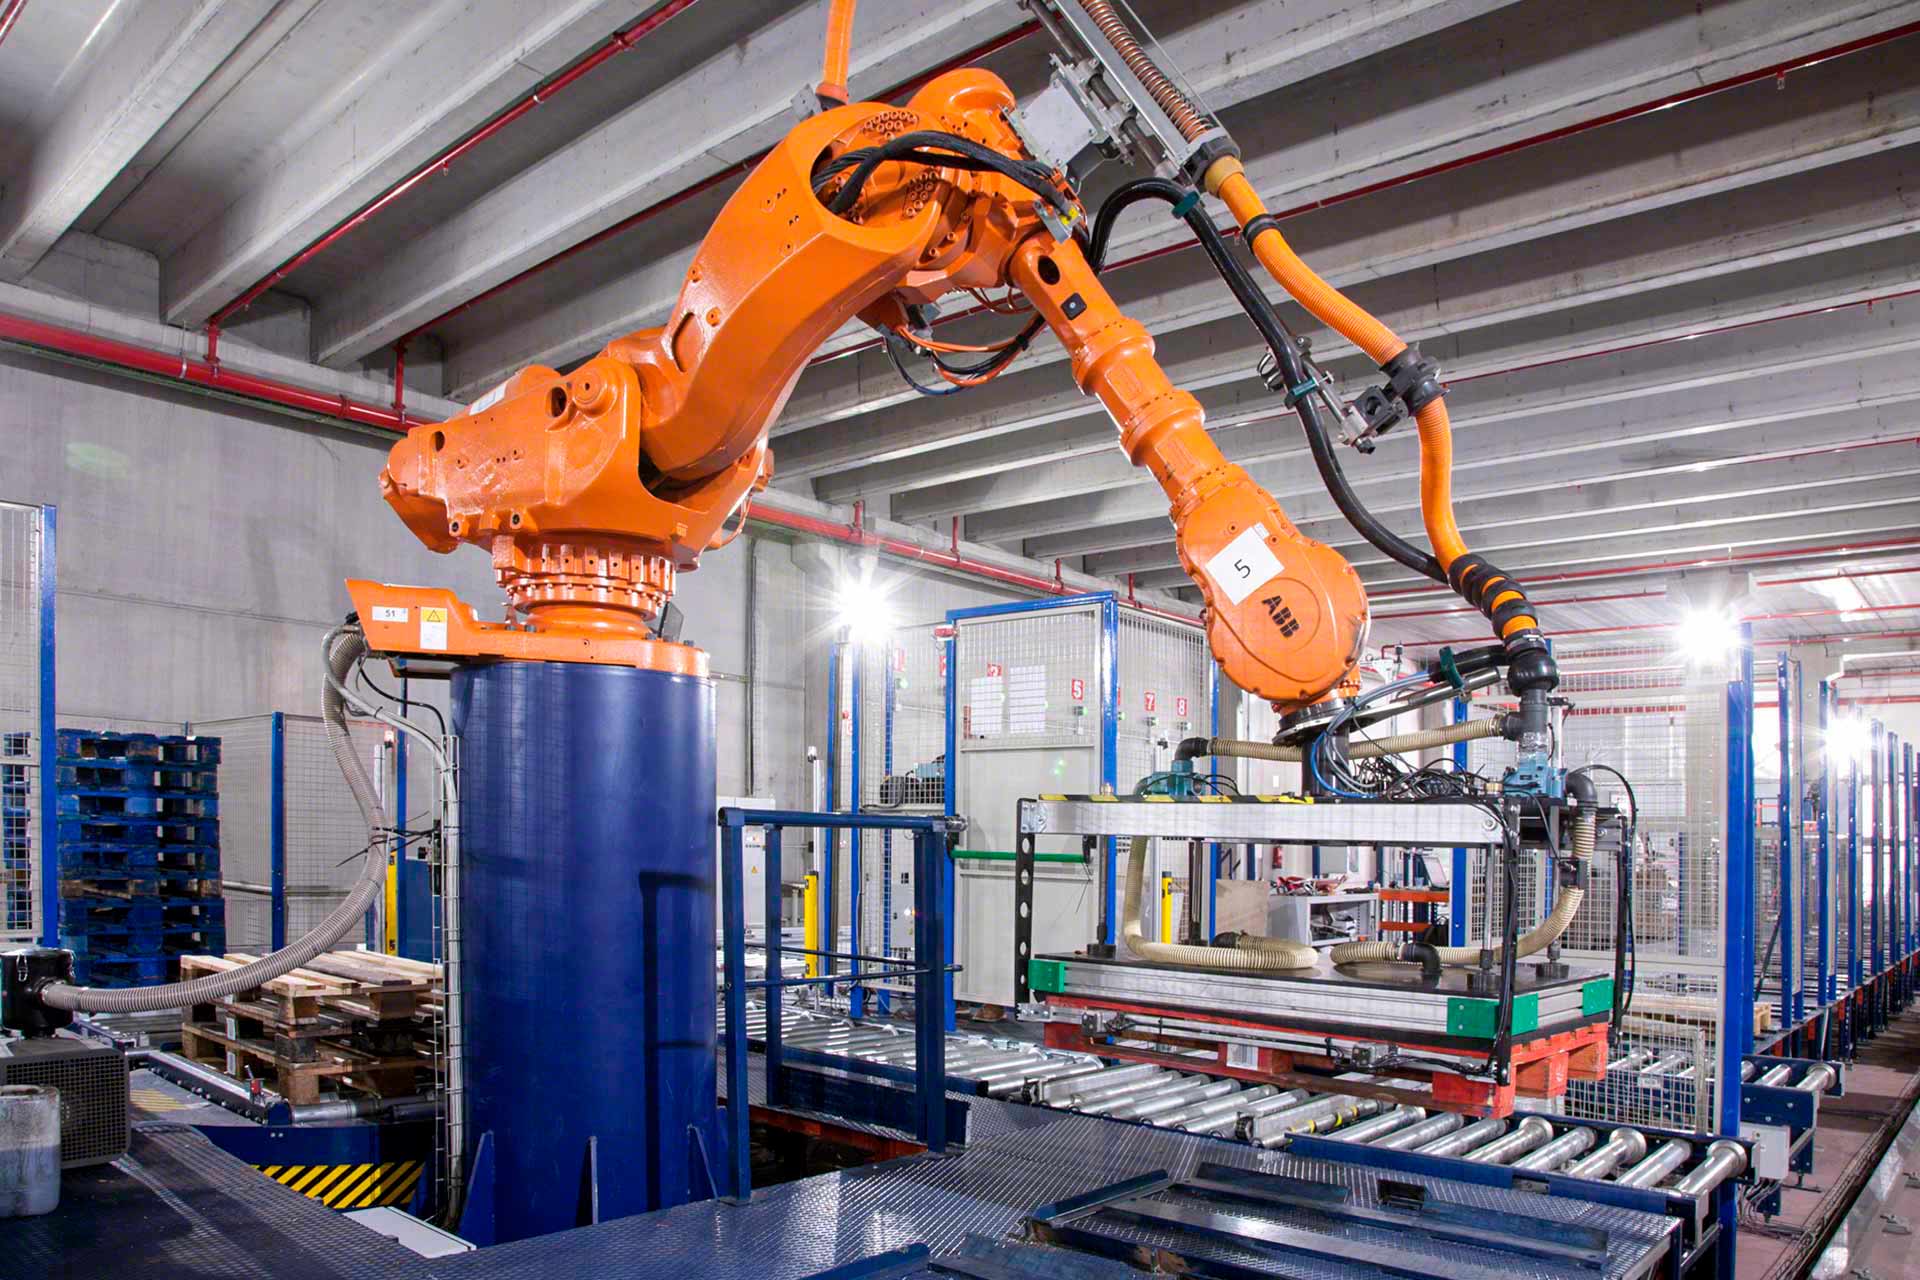 Roboty pick and place pobierają i przenoszą ładunki w sposób szybki i automatyczny